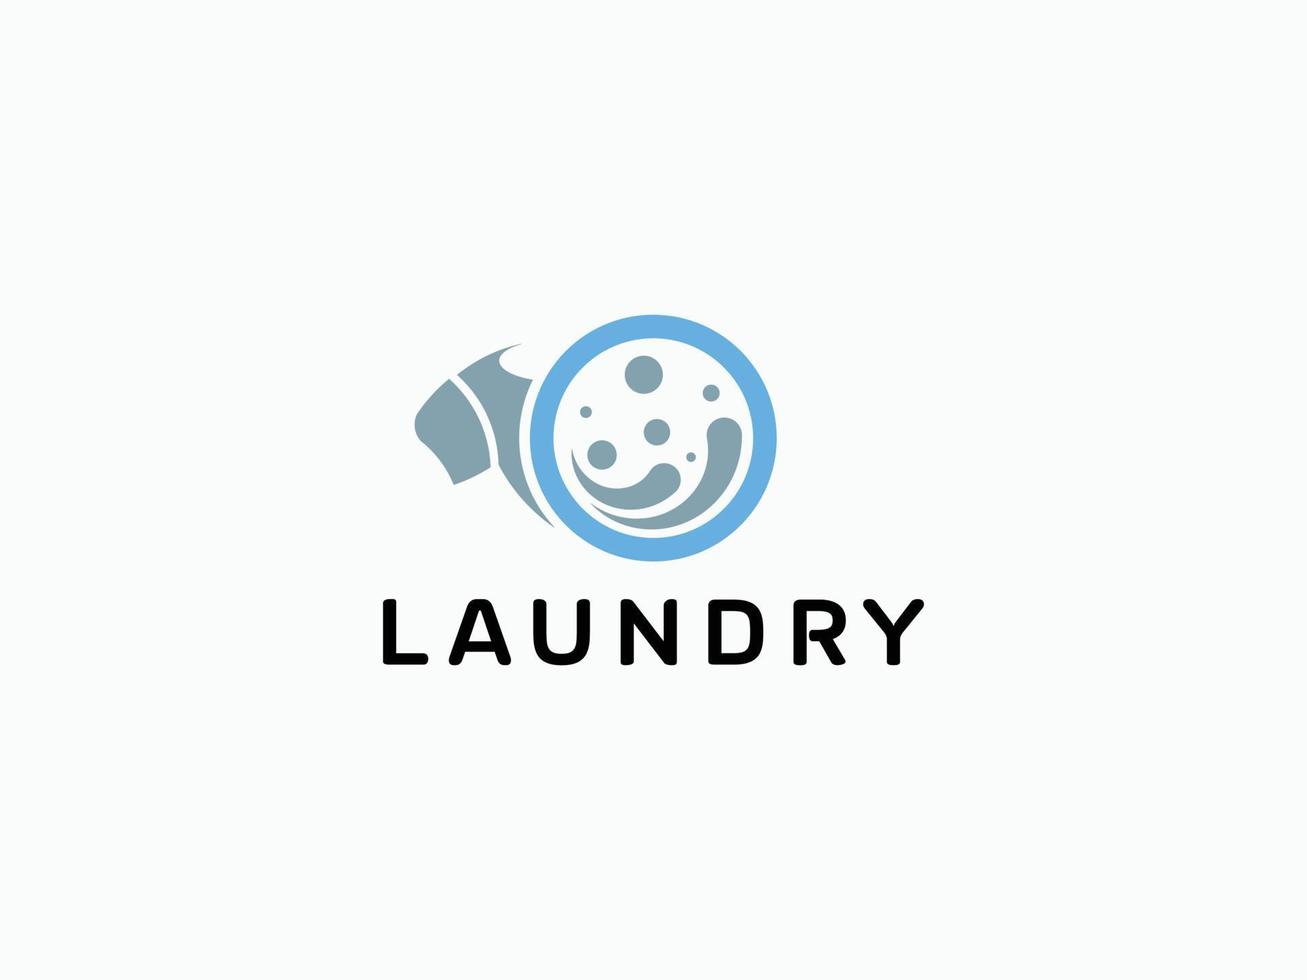 free vector laundry logo.